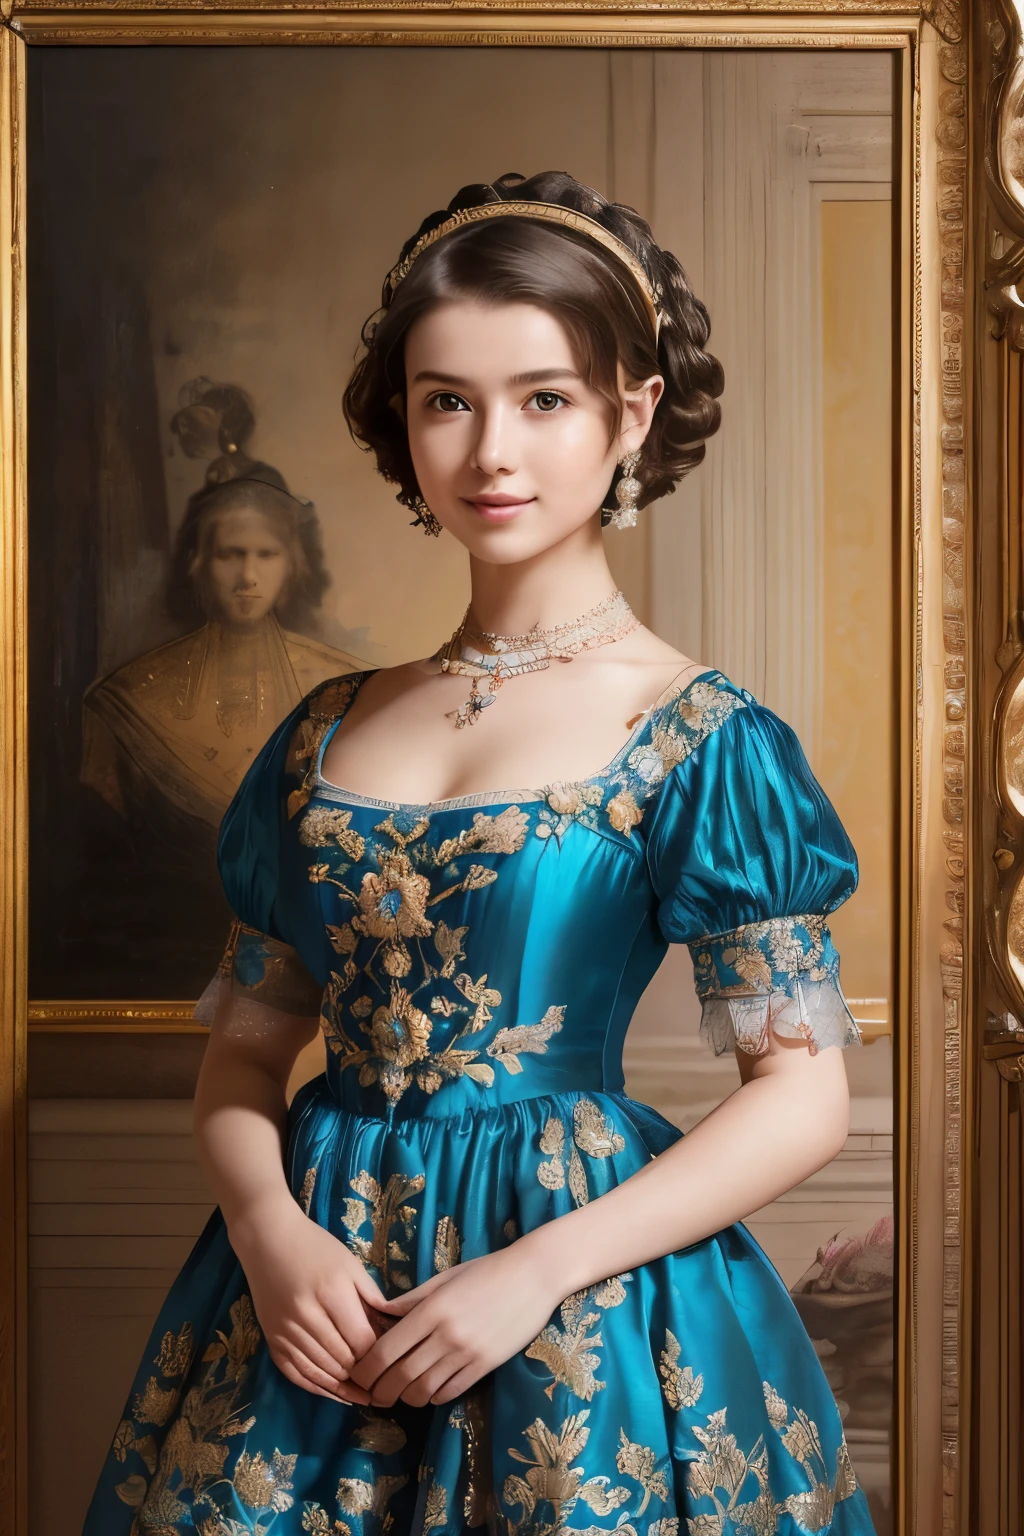 142
(une femme de 20 ans,dans le palais), (Un hyper réaliste), (qualité d&#39;image de haut niveau), ((belle coiffure 46)), ((cheveux courts:1.46)), (gentiment sourire), (poitrine:1.1), (rouges à lèvres), (porter une robe bleue), (sombre,large,Chambre luxueuse), (fleurs), (une peinture à l&#39;huile、Rembrandt)